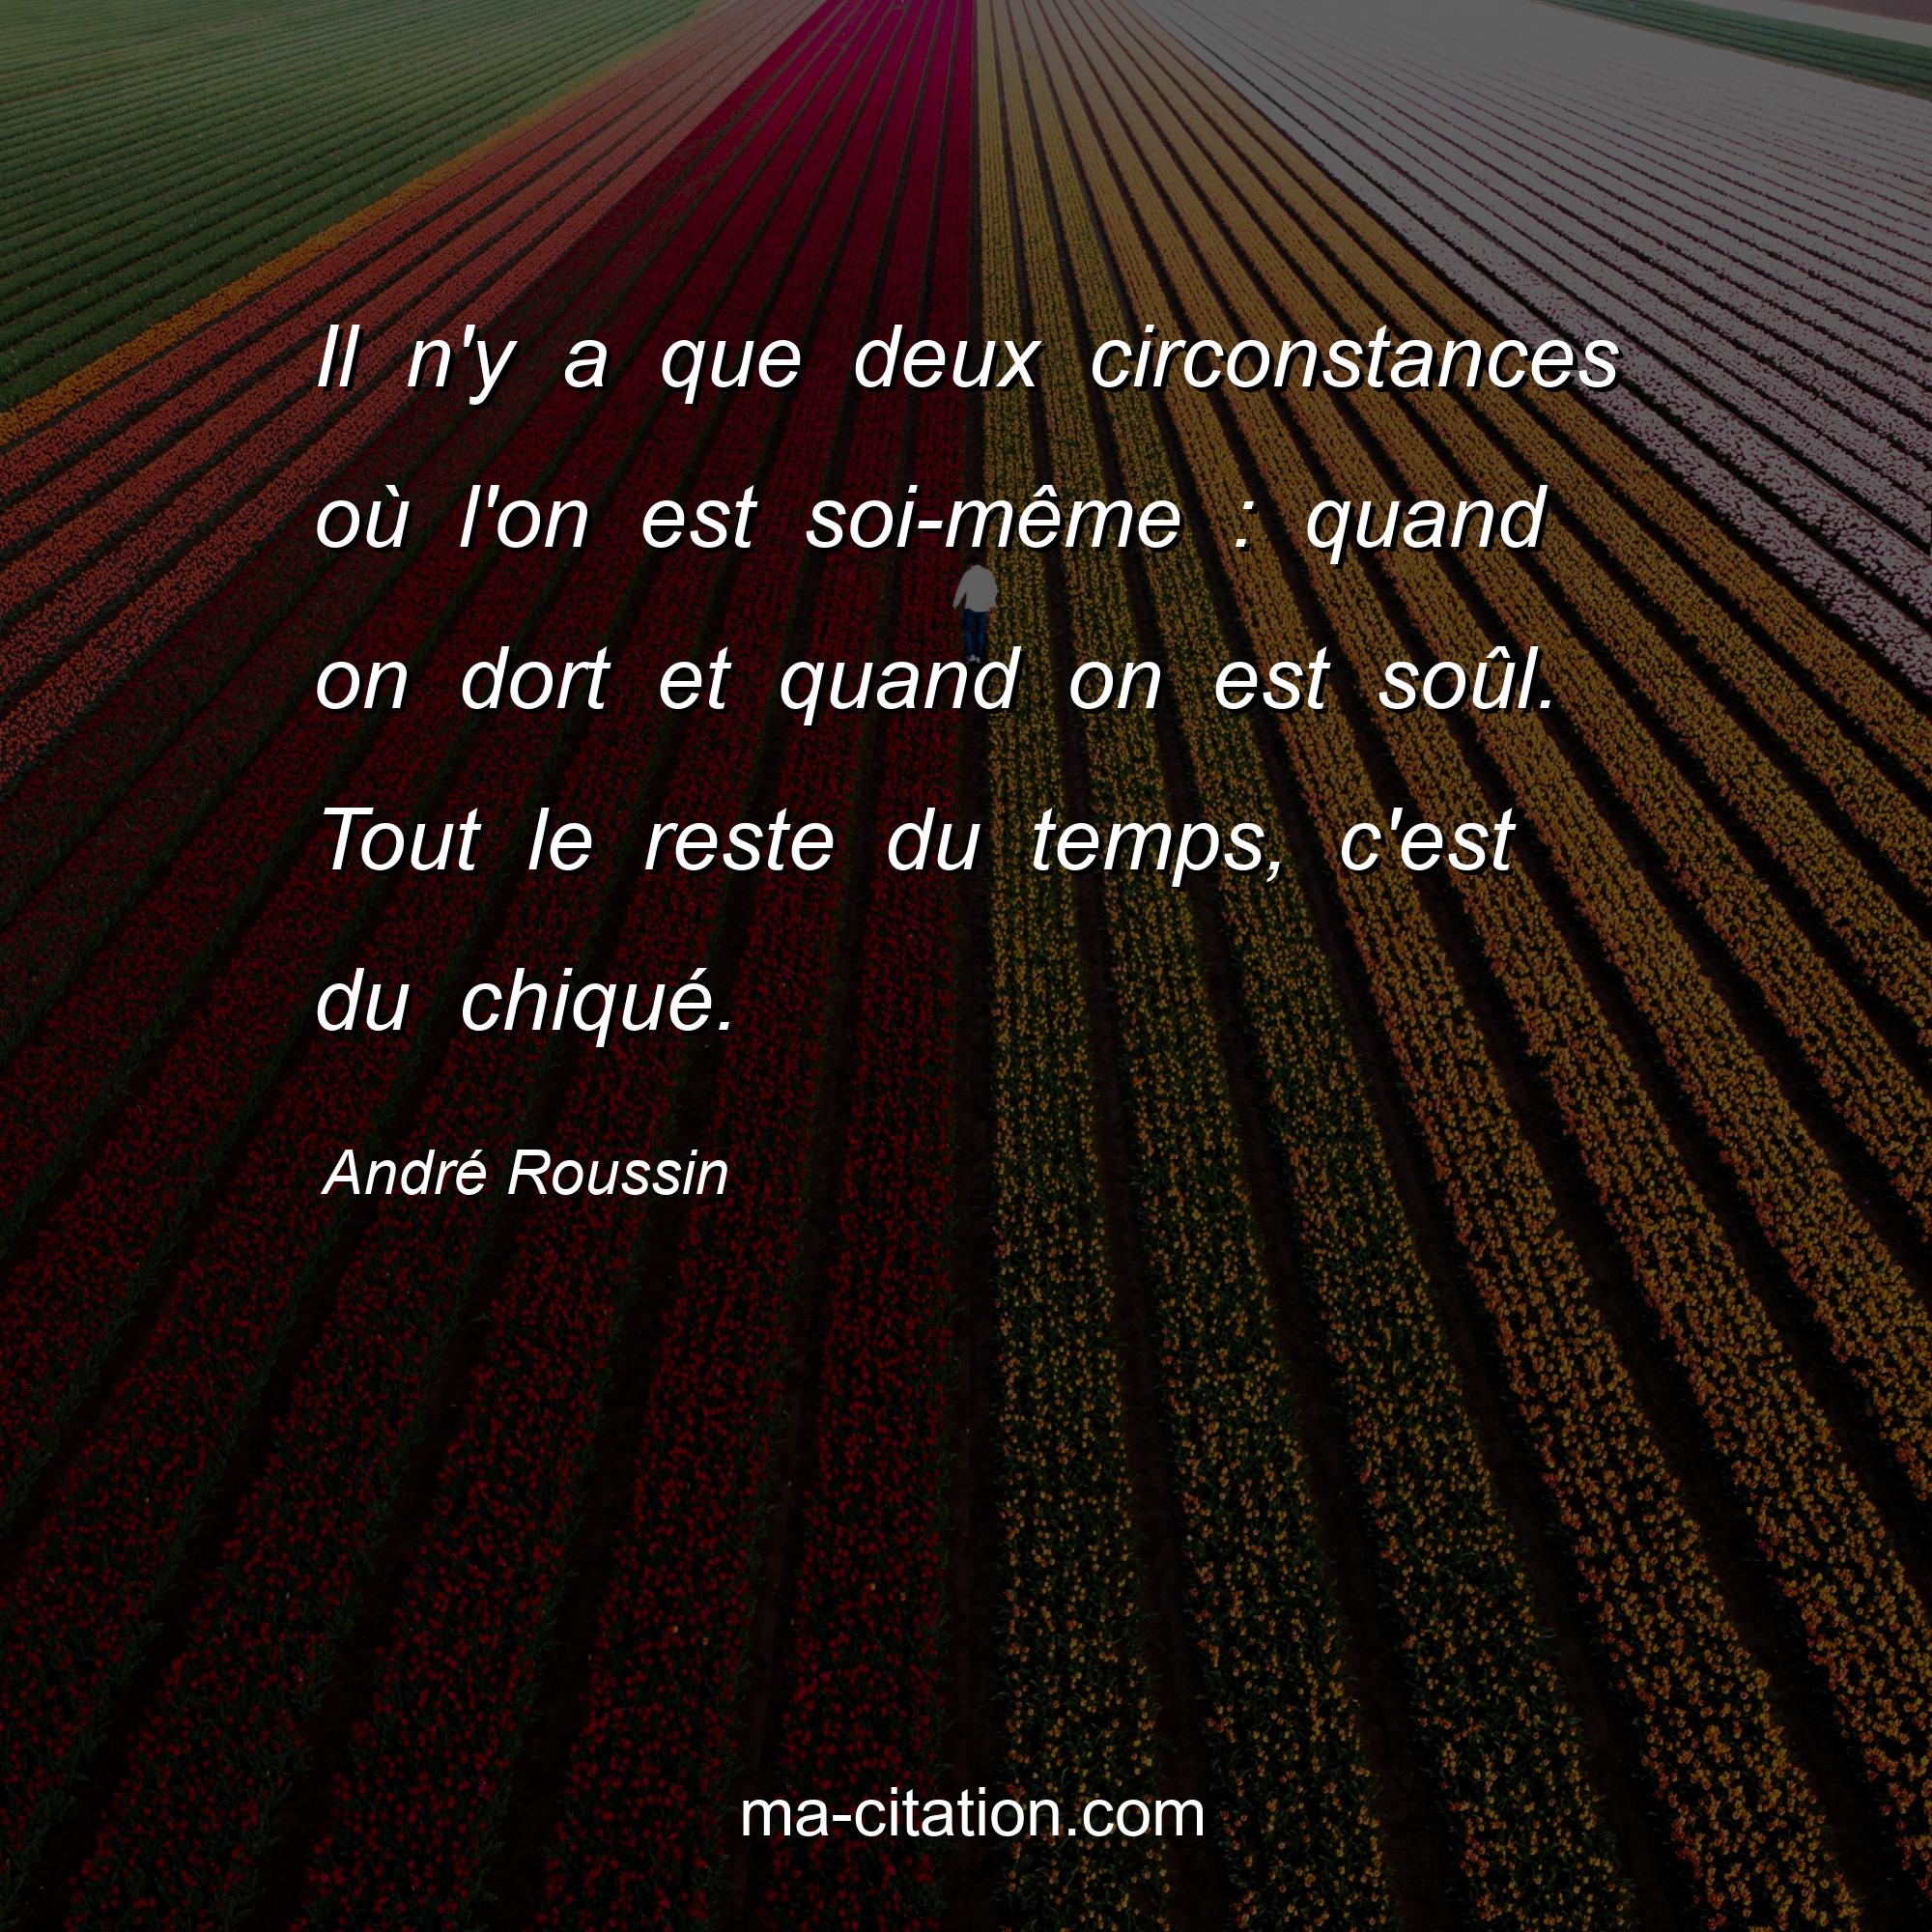 André Roussin : Il n'y a que deux circonstances où l'on est soi-même : quand on dort et quand on est soûl. Tout le reste du temps, c'est du chiqué.